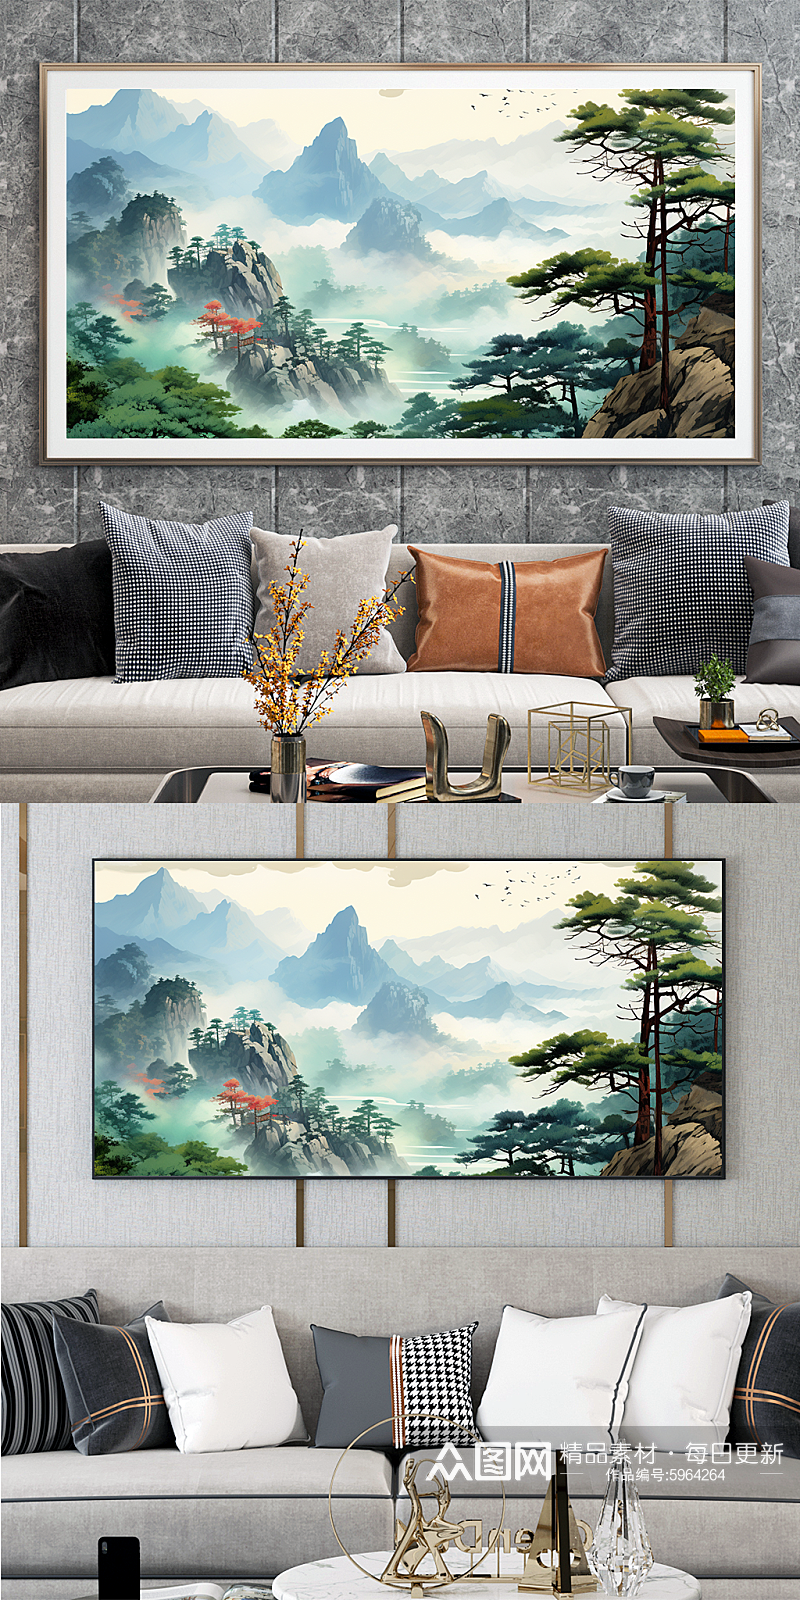 中国国画迎客松山水画装饰画素材